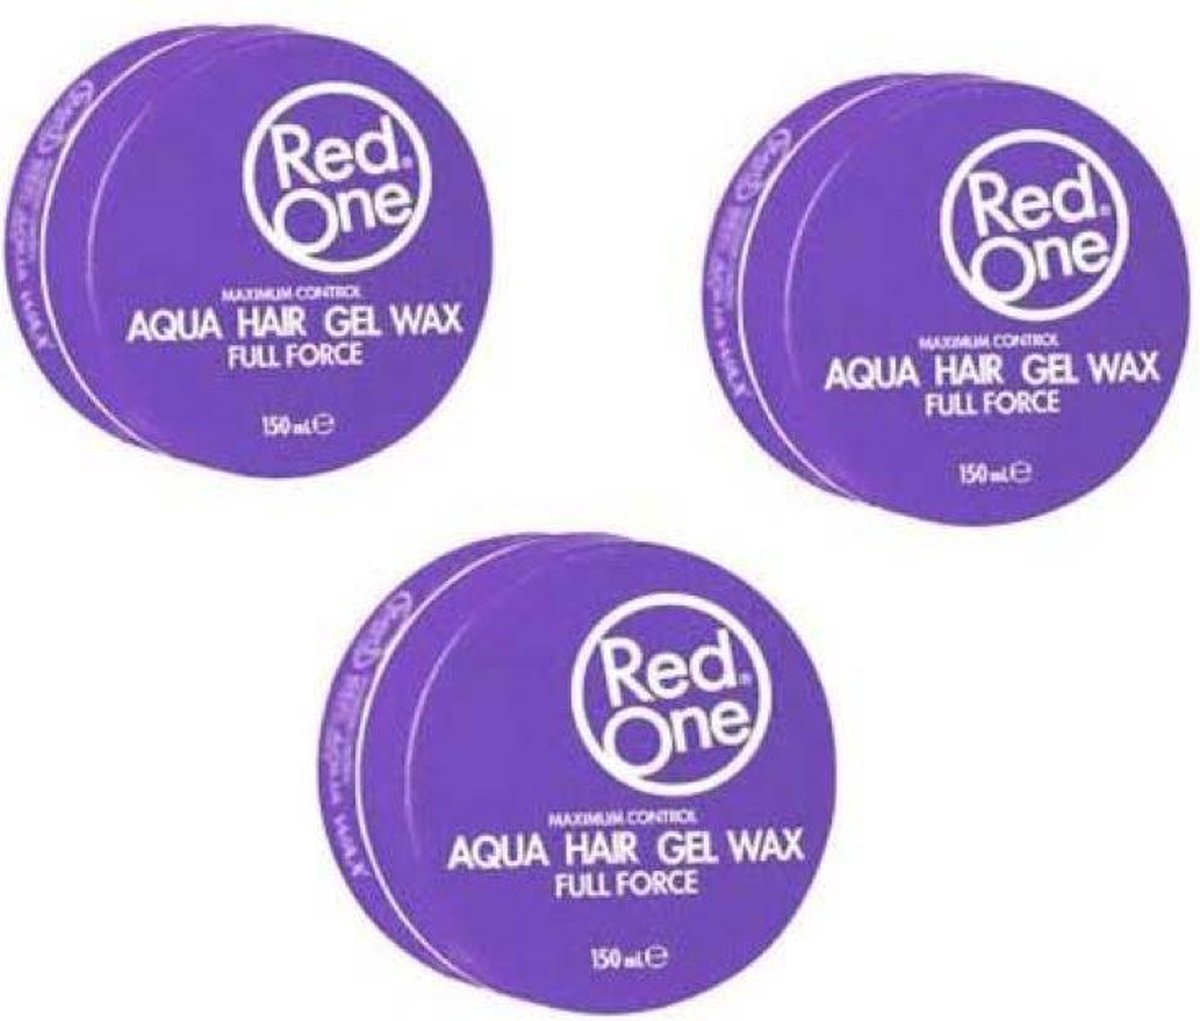 Red One Violetta Aqua Hair Gel Wax - 3 x 150ml